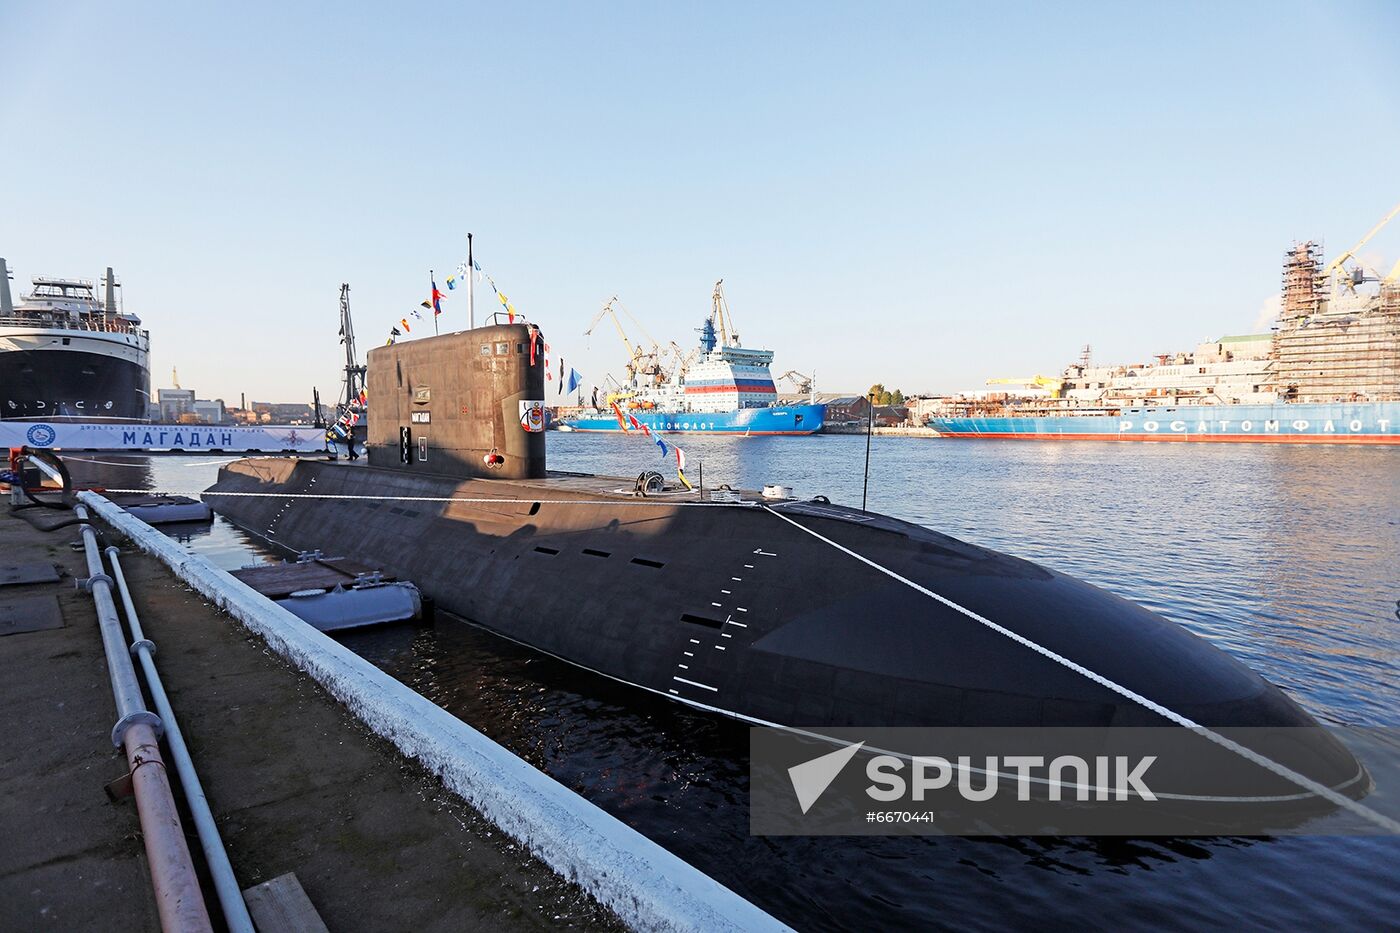 Russia Navy Magadan Submarine Launching